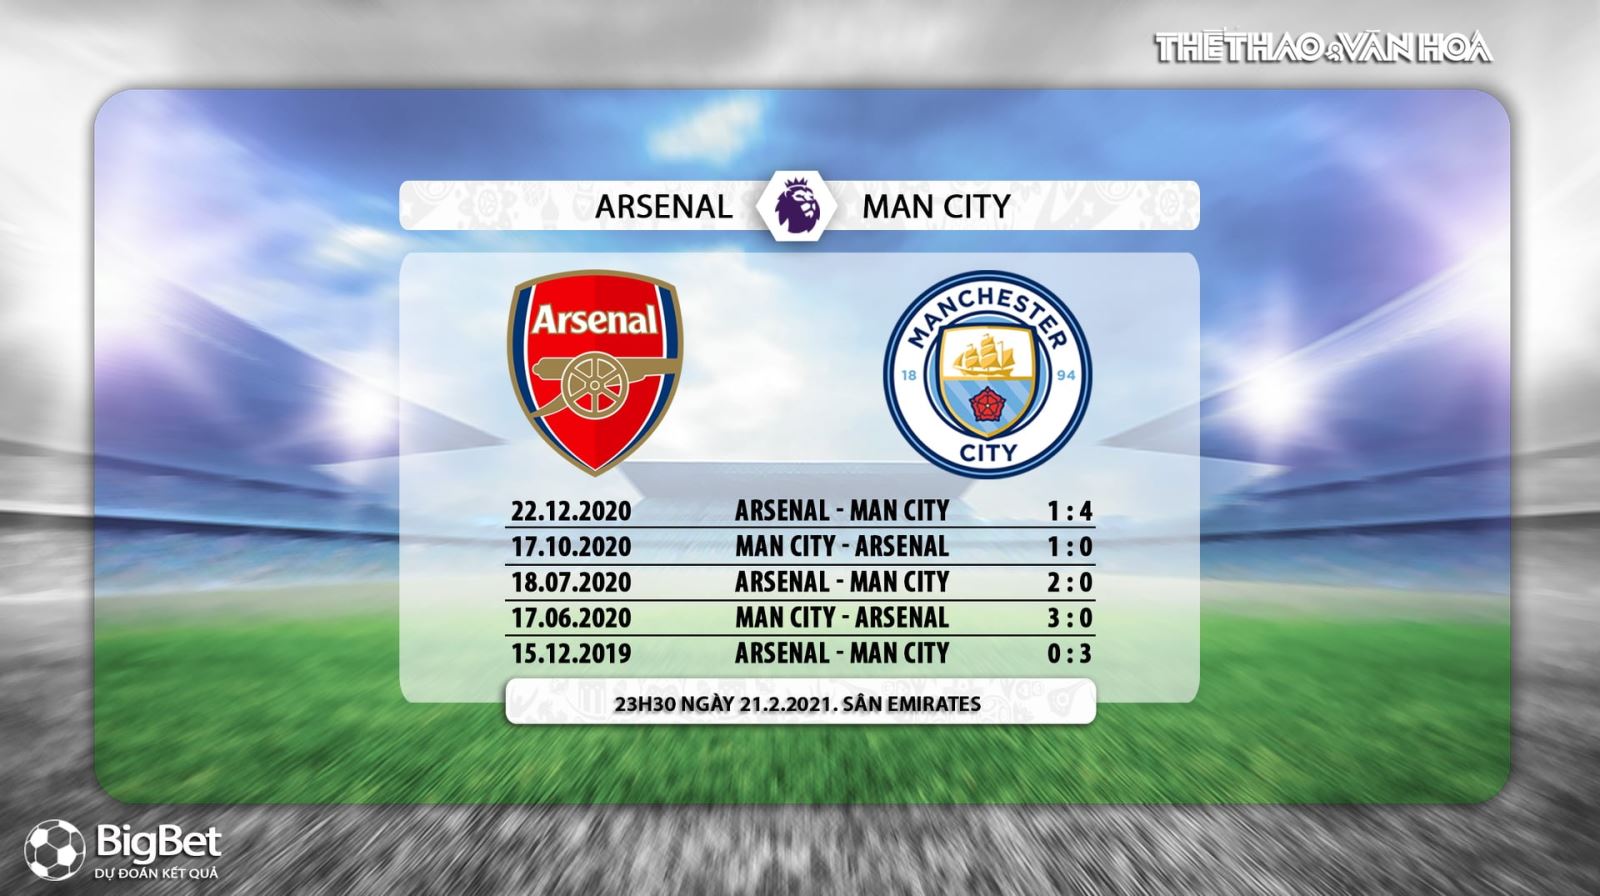 Link trực tiếp Arsenal vs Man City, K+PM trực tiếp Ngoại hạng Anh, Trực tiếp bóng đá, Lịch thi đấu bóng đá Anh: Arsenal vs Man City, Bảng xếp hạng Ngoại hạng Anh, bong da